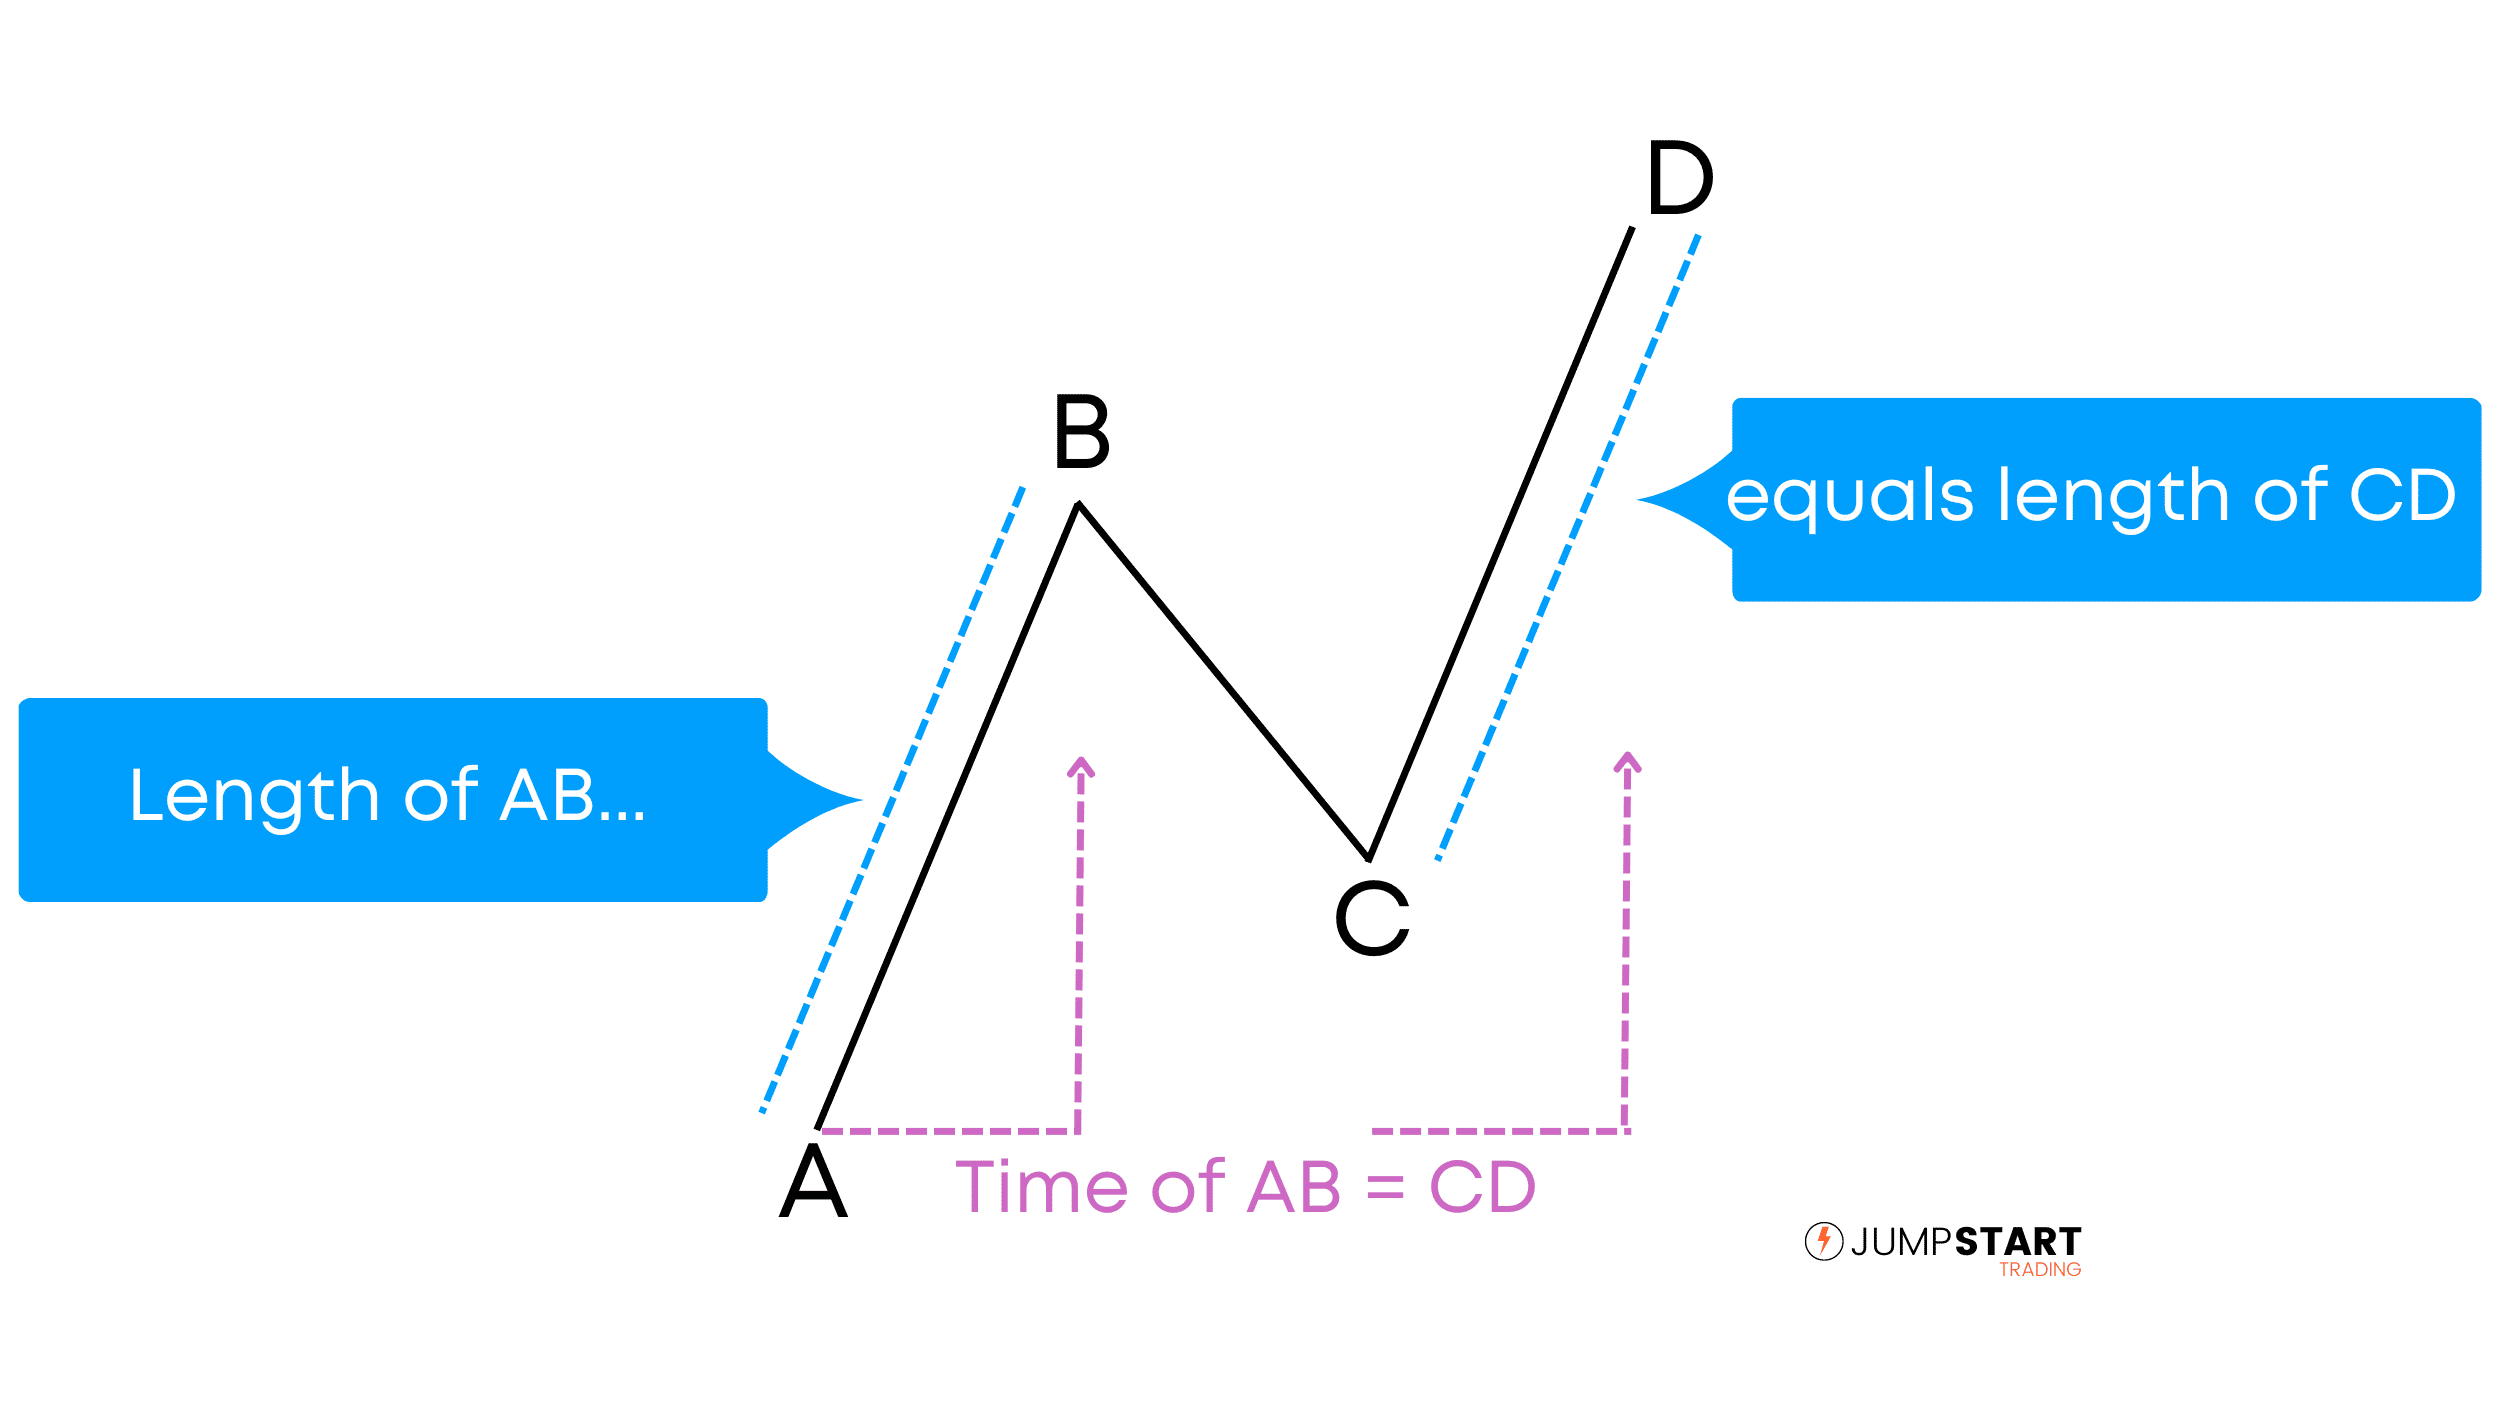 가격 변동 및 시간 측면에서 AB 구간이 CD 구간과 같음을 나타내는 ABCD 패턴의 예.